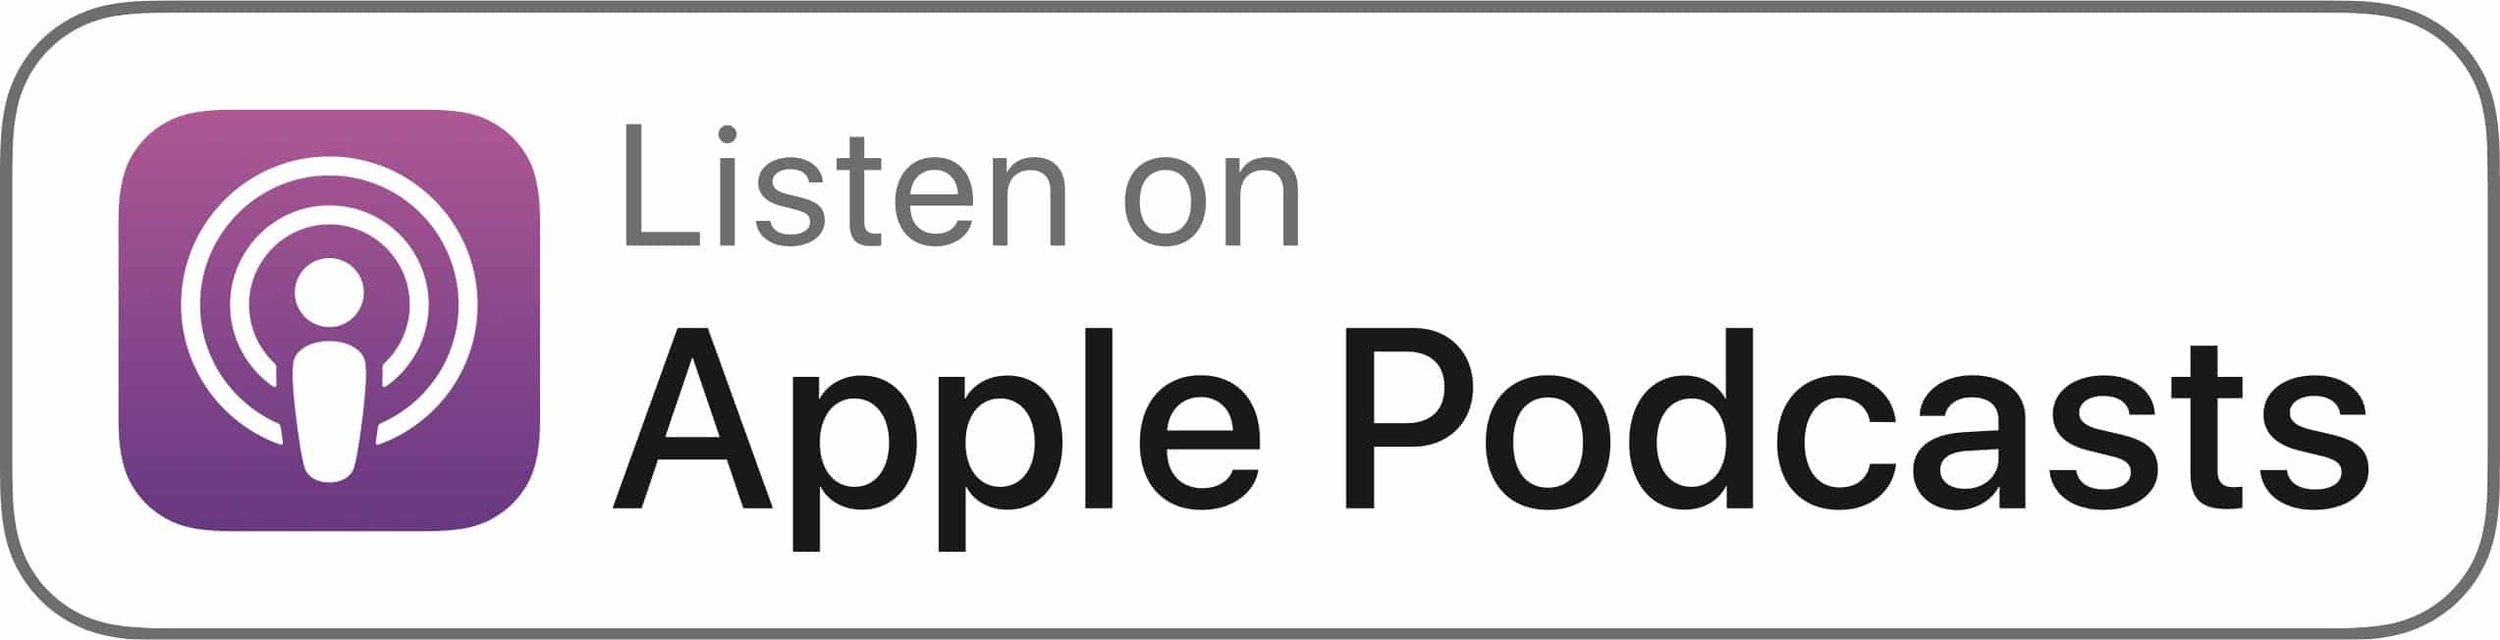 Apple Podcasts (Copy) (Copy) (Copy) (Copy) (Copy) (Copy)